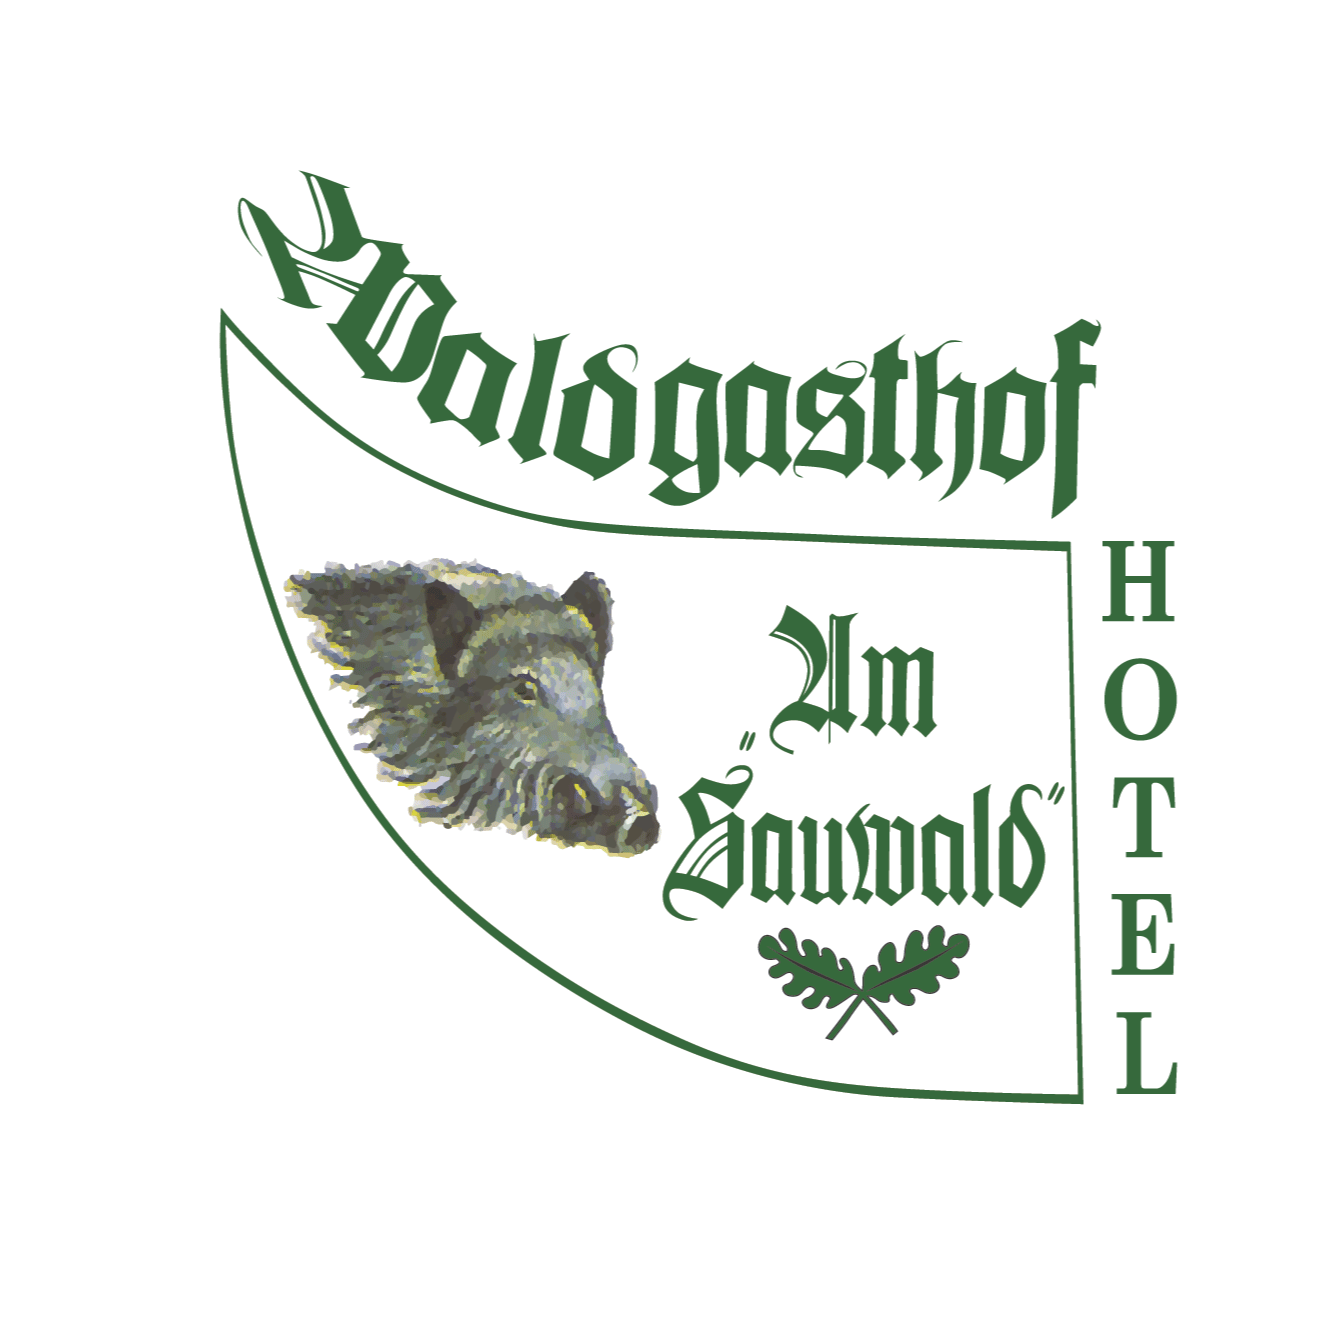 Waldgasthof & Hotel "Am Sauwald" in Tannenberg - Logo